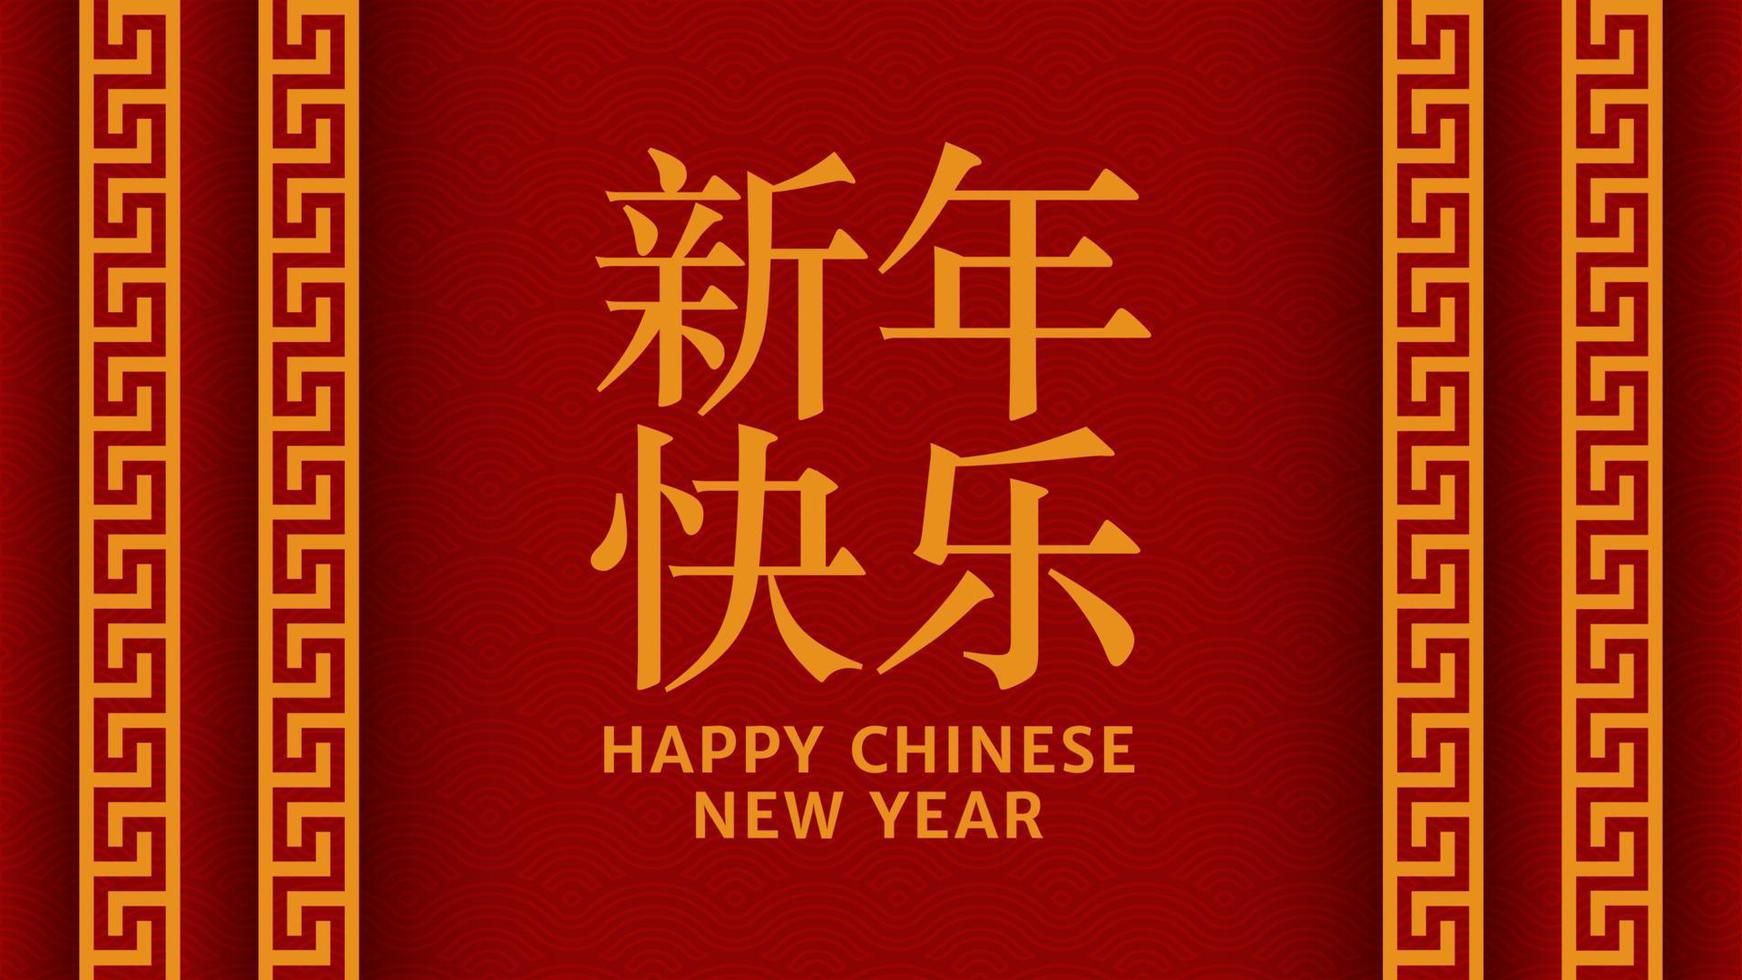 rot und gold frohes chinesisches neujahrsfest banner design. Banner mit asiatischem festlichem Ornamentvektor. Übersetzen aus dem Chinesischen frohes neues Jahr. Vektor-Illustration. vektor